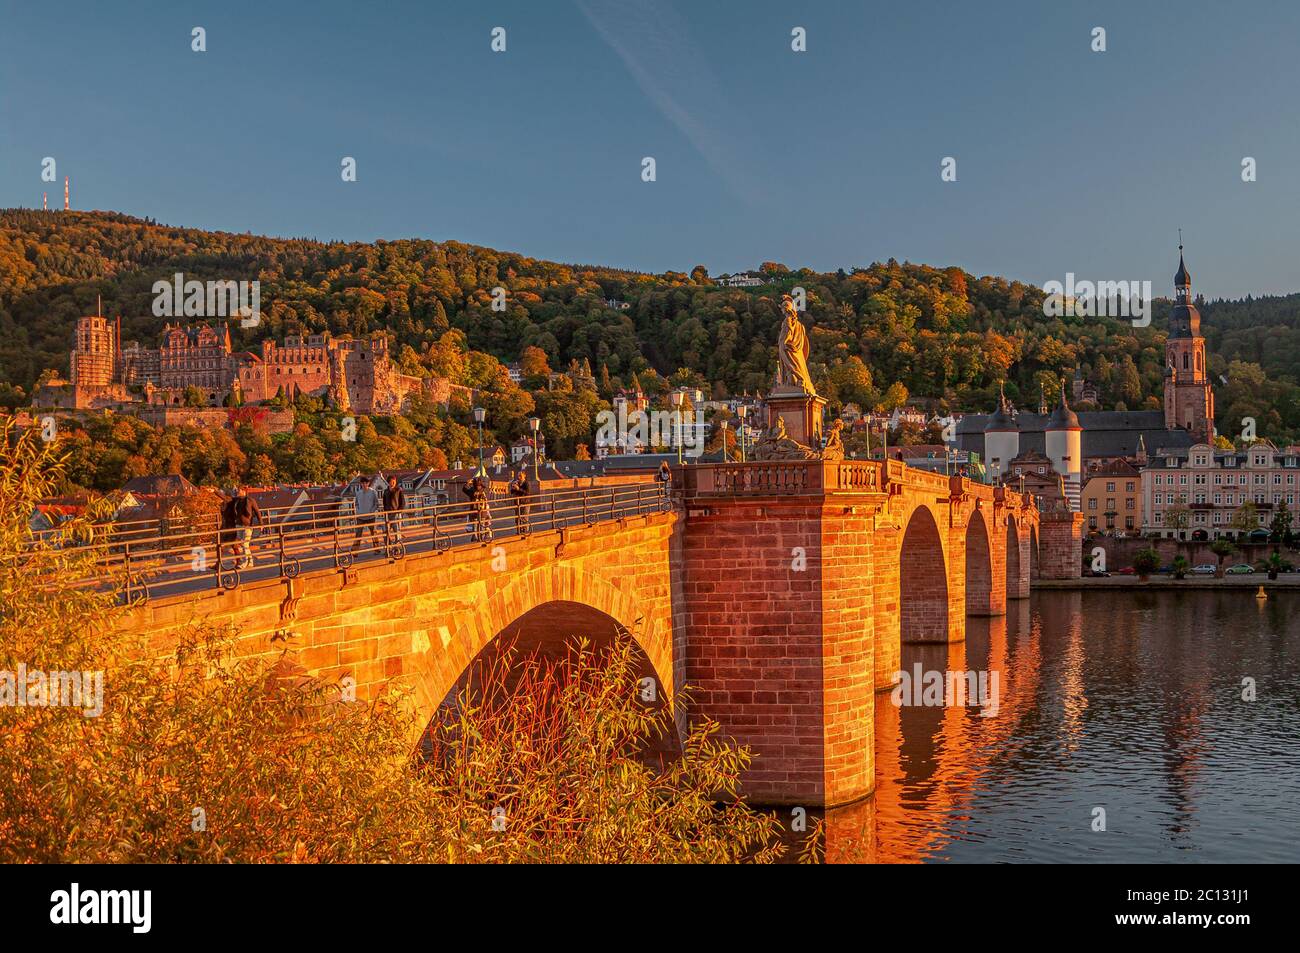 Splendido tramonto rossiccio sulla città vecchia, sul castello e sul ponte principale della città di Heidelberg, Germania Foto Stock